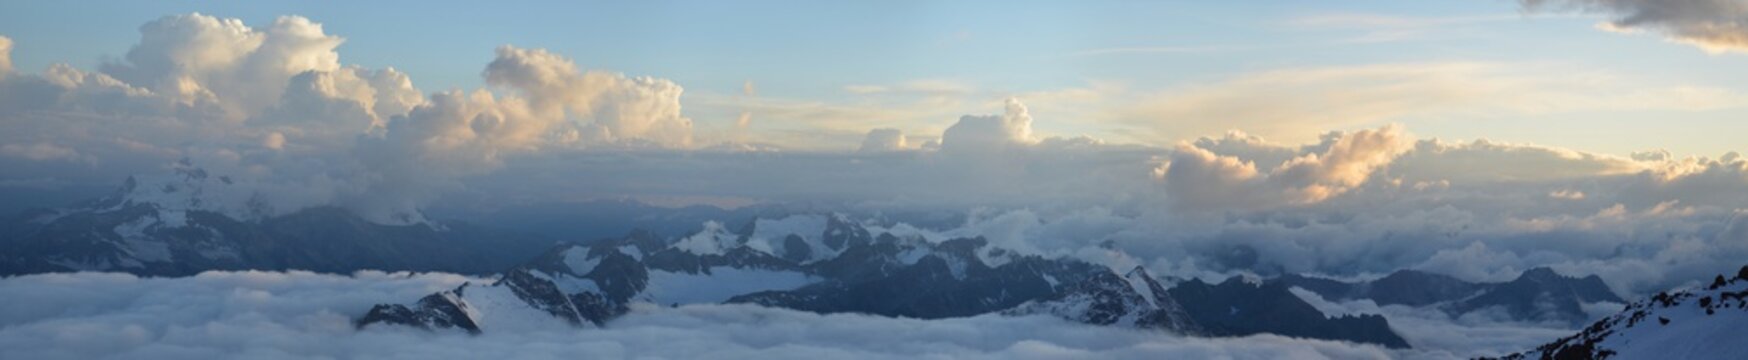 Fototapeta Mount Elbrus from the base camp in the fog